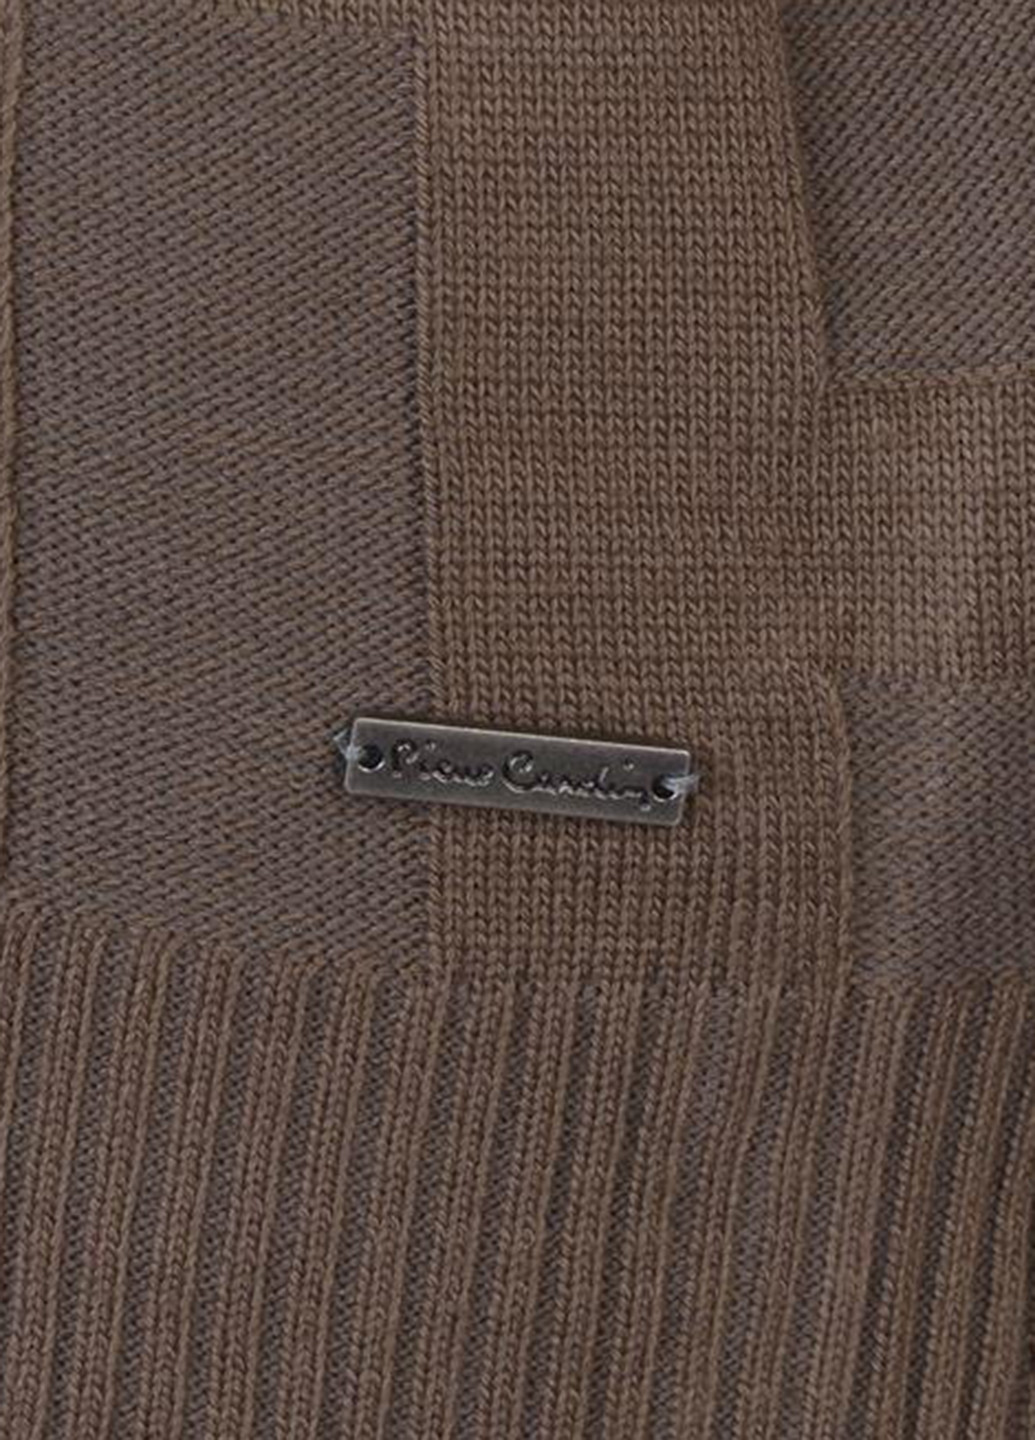 Светло-коричневый демисезонный пуловер пуловер Pierre Cardin